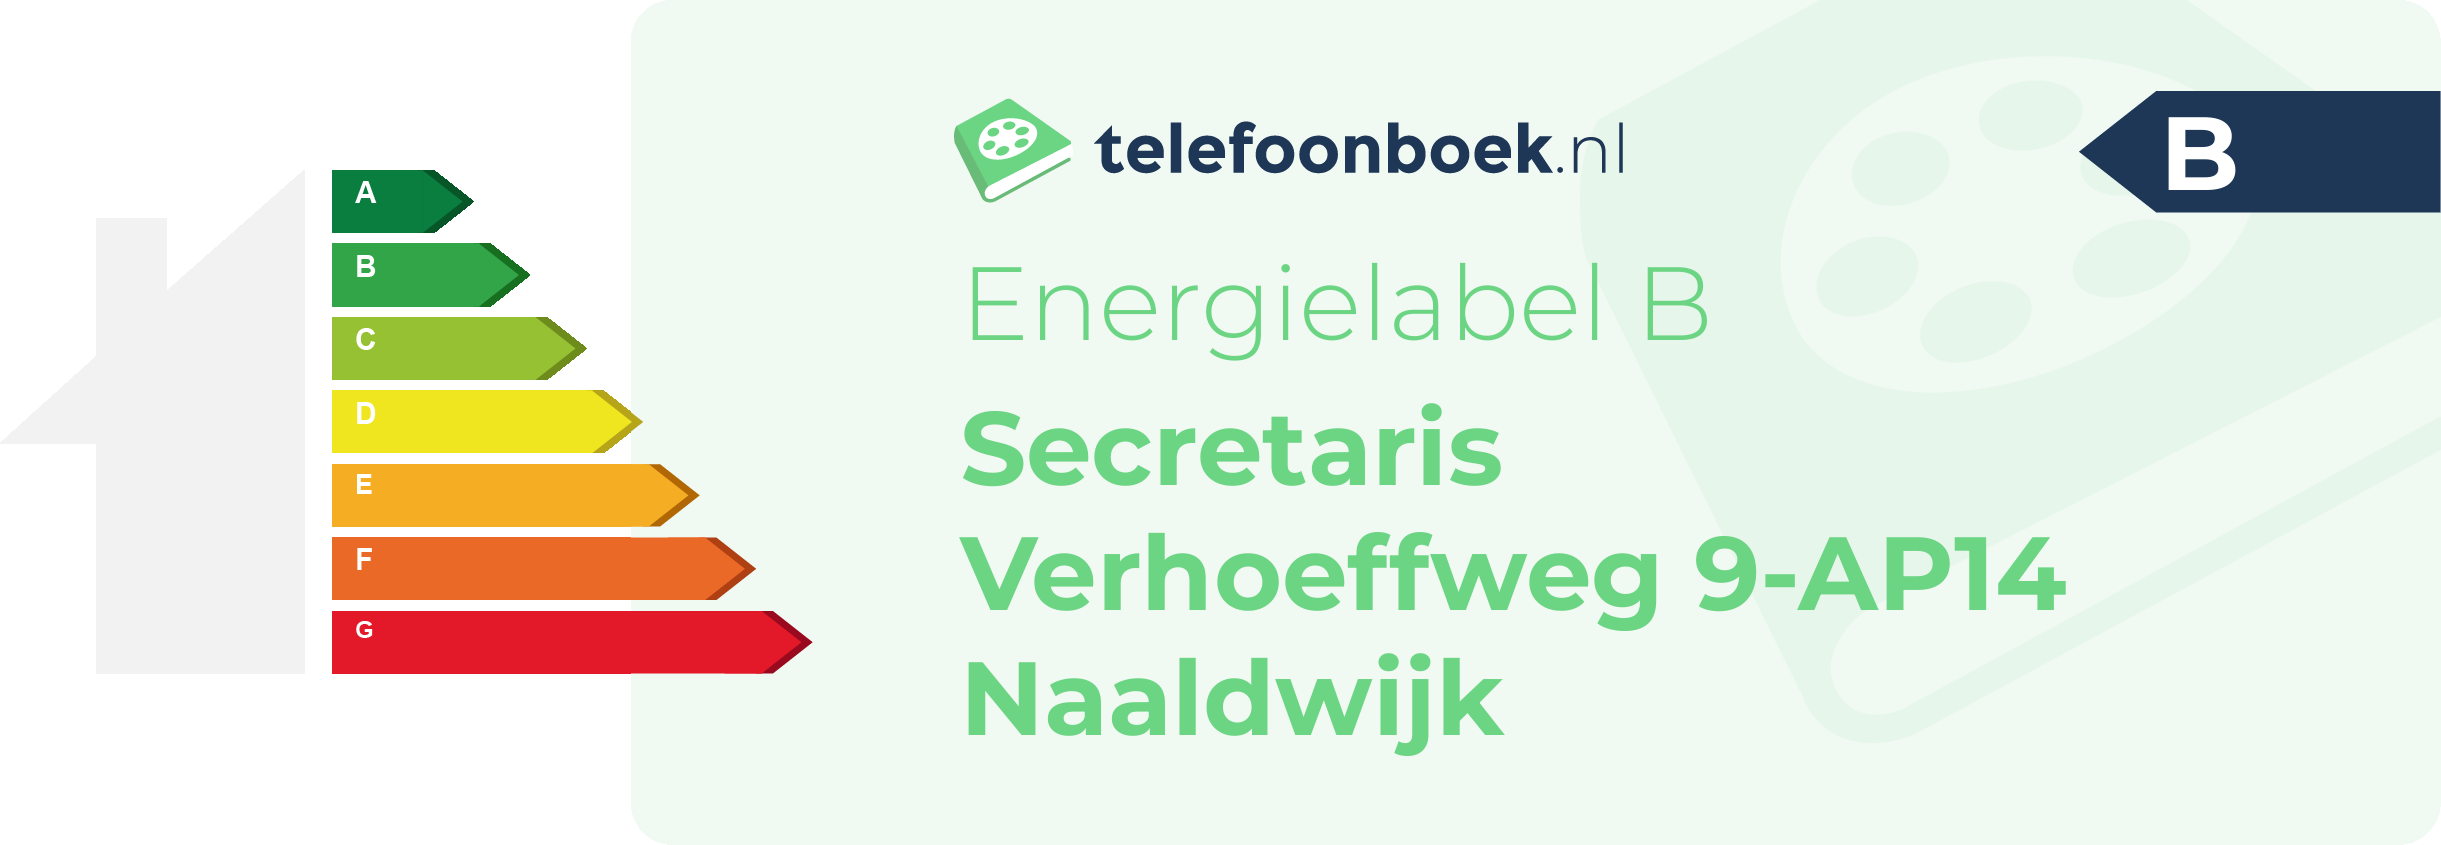 Energielabel Secretaris Verhoeffweg 9-AP14 Naaldwijk